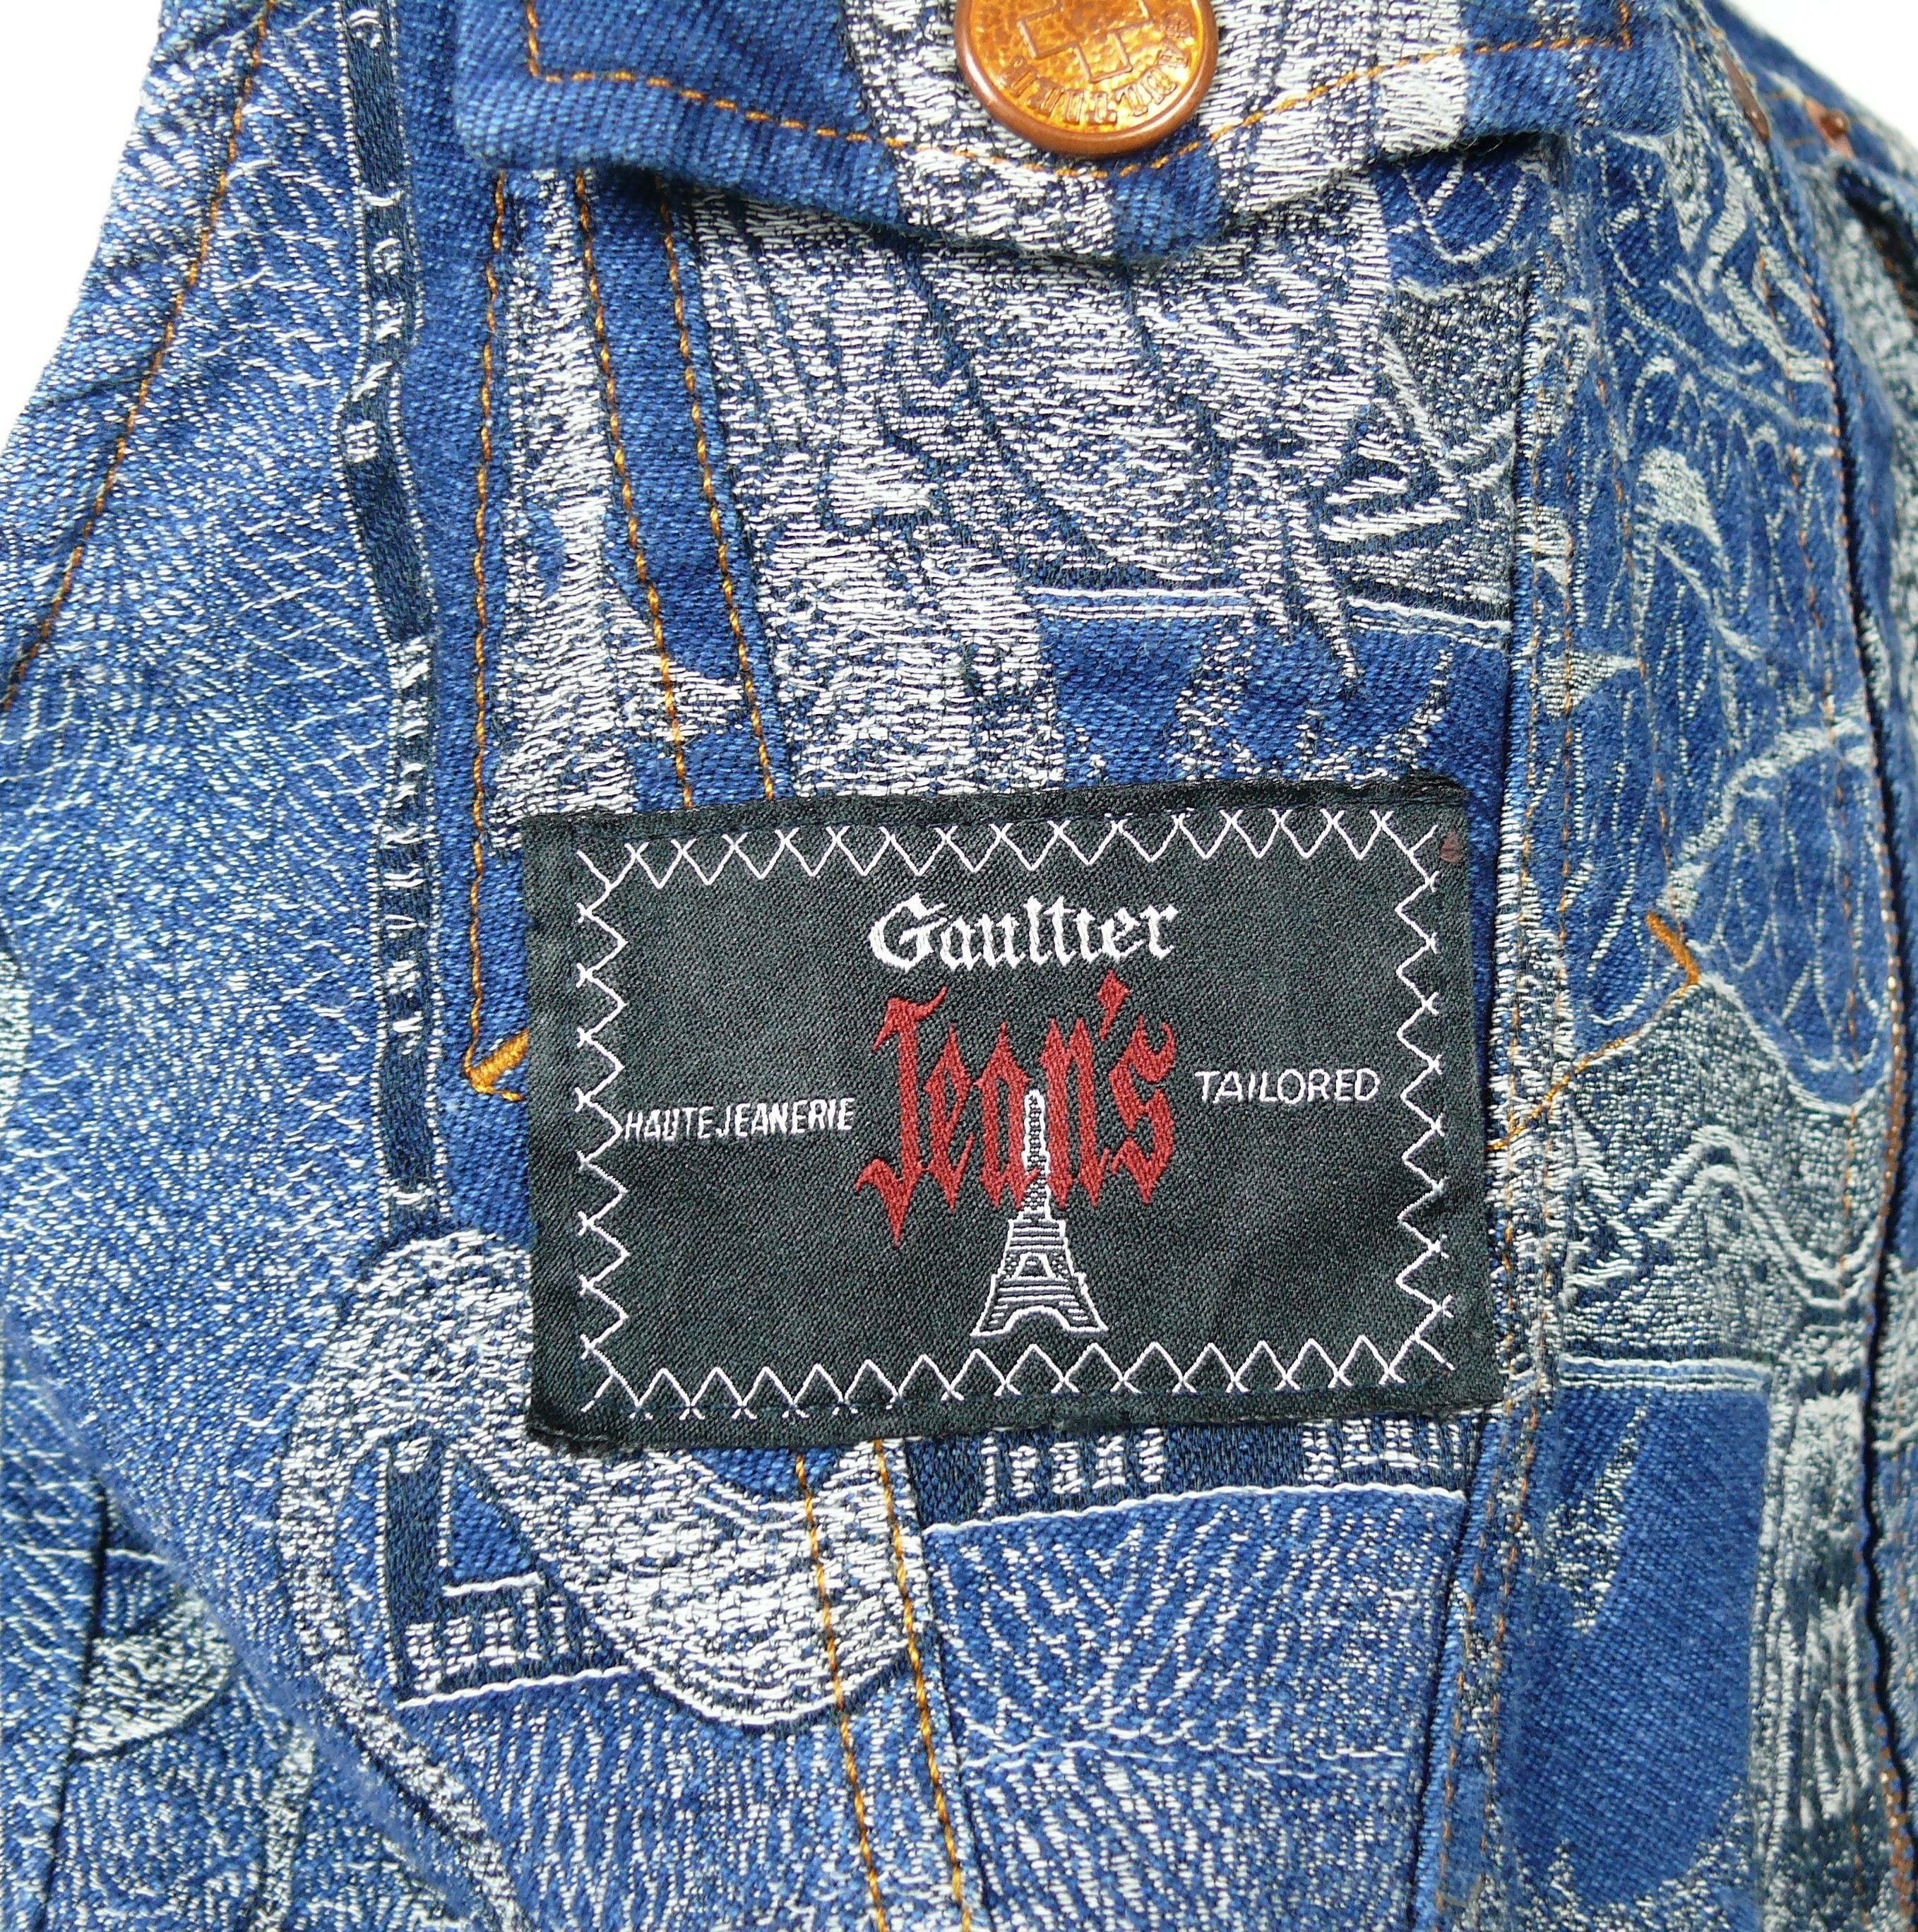 Jean Paul Gaultier Vintage Dragons Jacquard Denim Vest 2